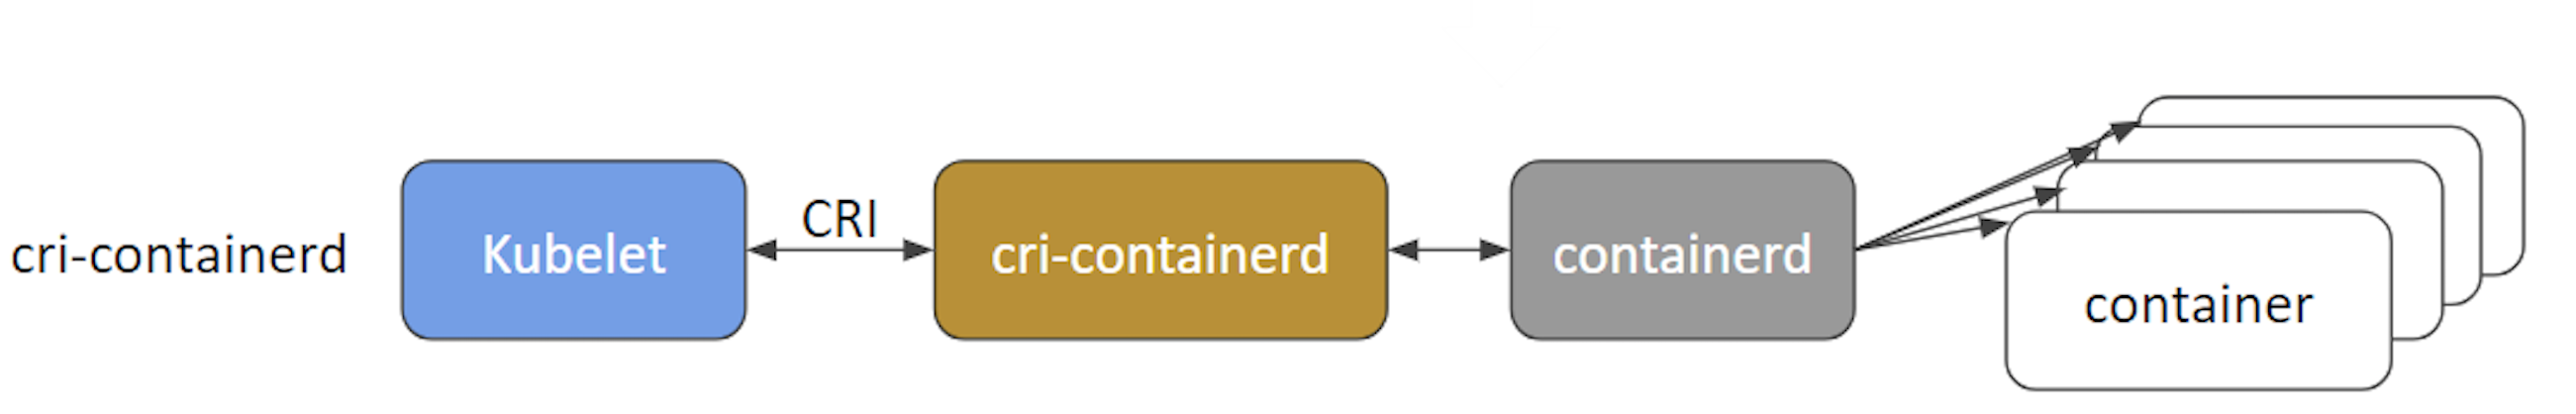 cri-containerd Architecture